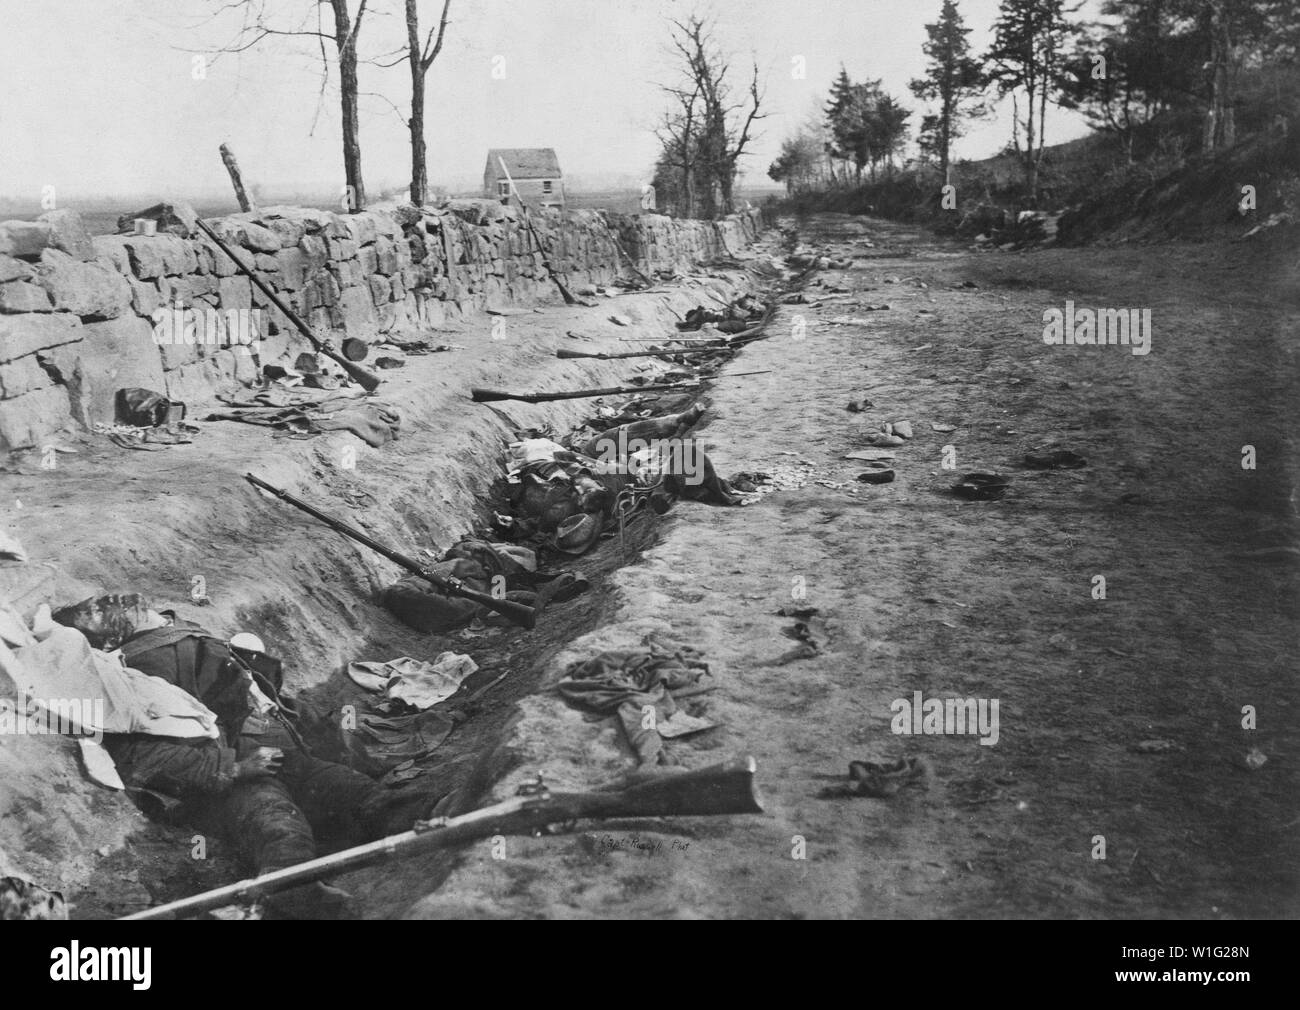 Des soldats morts dans les fossés le long du mur de pierre, Marye Heights, bataille de Fredericksburg, décembre 1862, photo de Andrew J. Russell, publié le 3 mai 1863 Banque D'Images